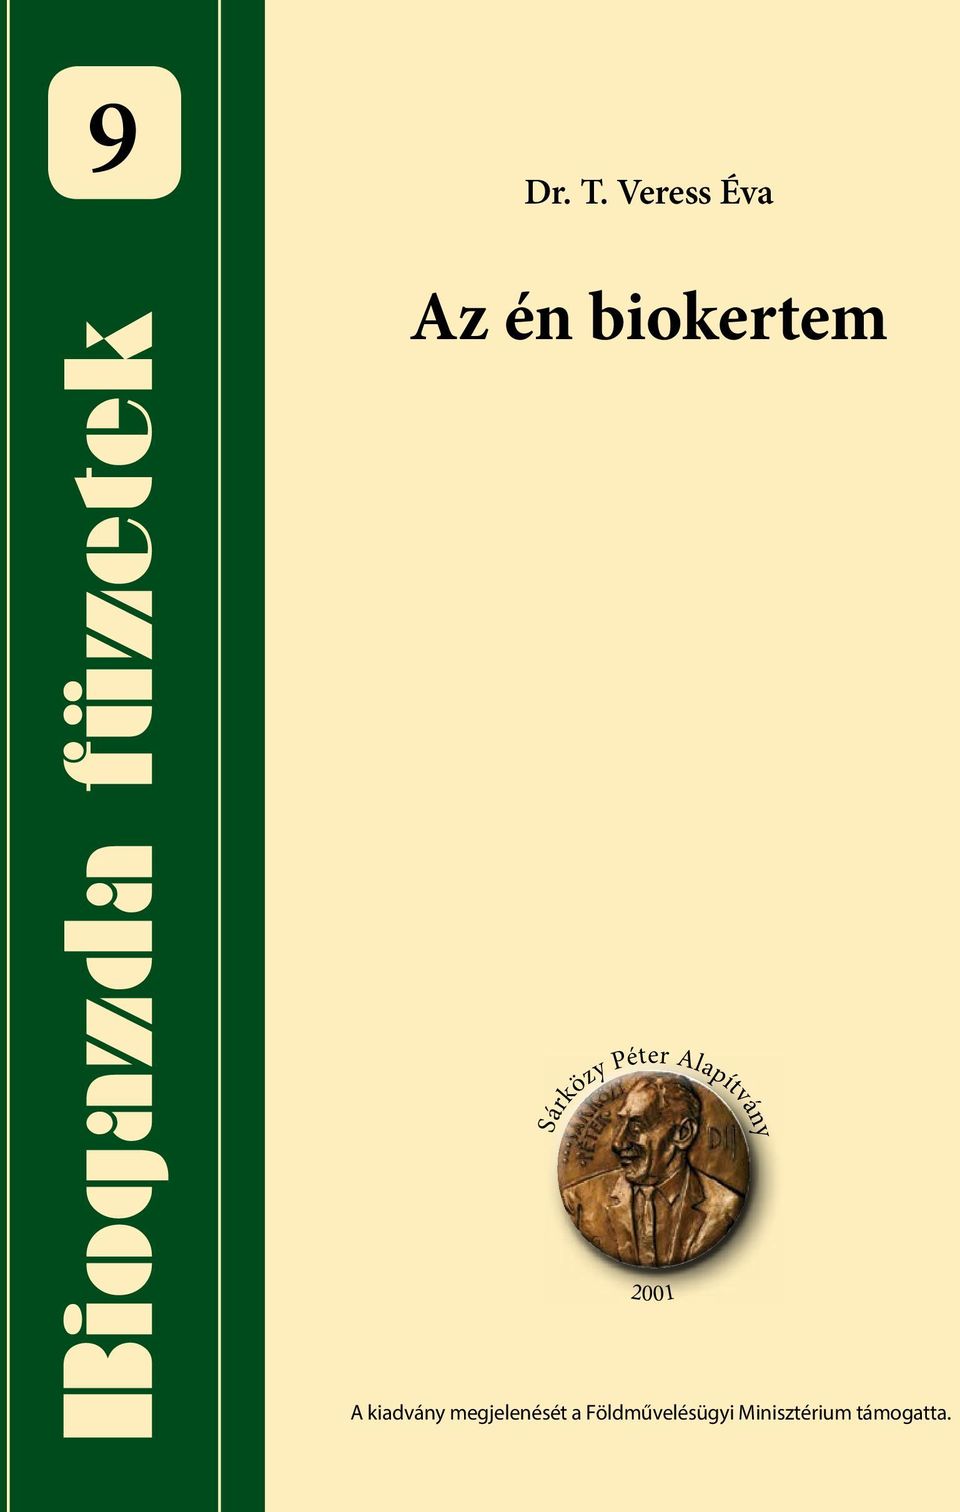 Dr. T. Veress Éva. Az én biokertem. Biogazda füzetek. A kiadvány  megjelenését a Földművelésügyi Minisztérium támogatta. - PDF Free Download